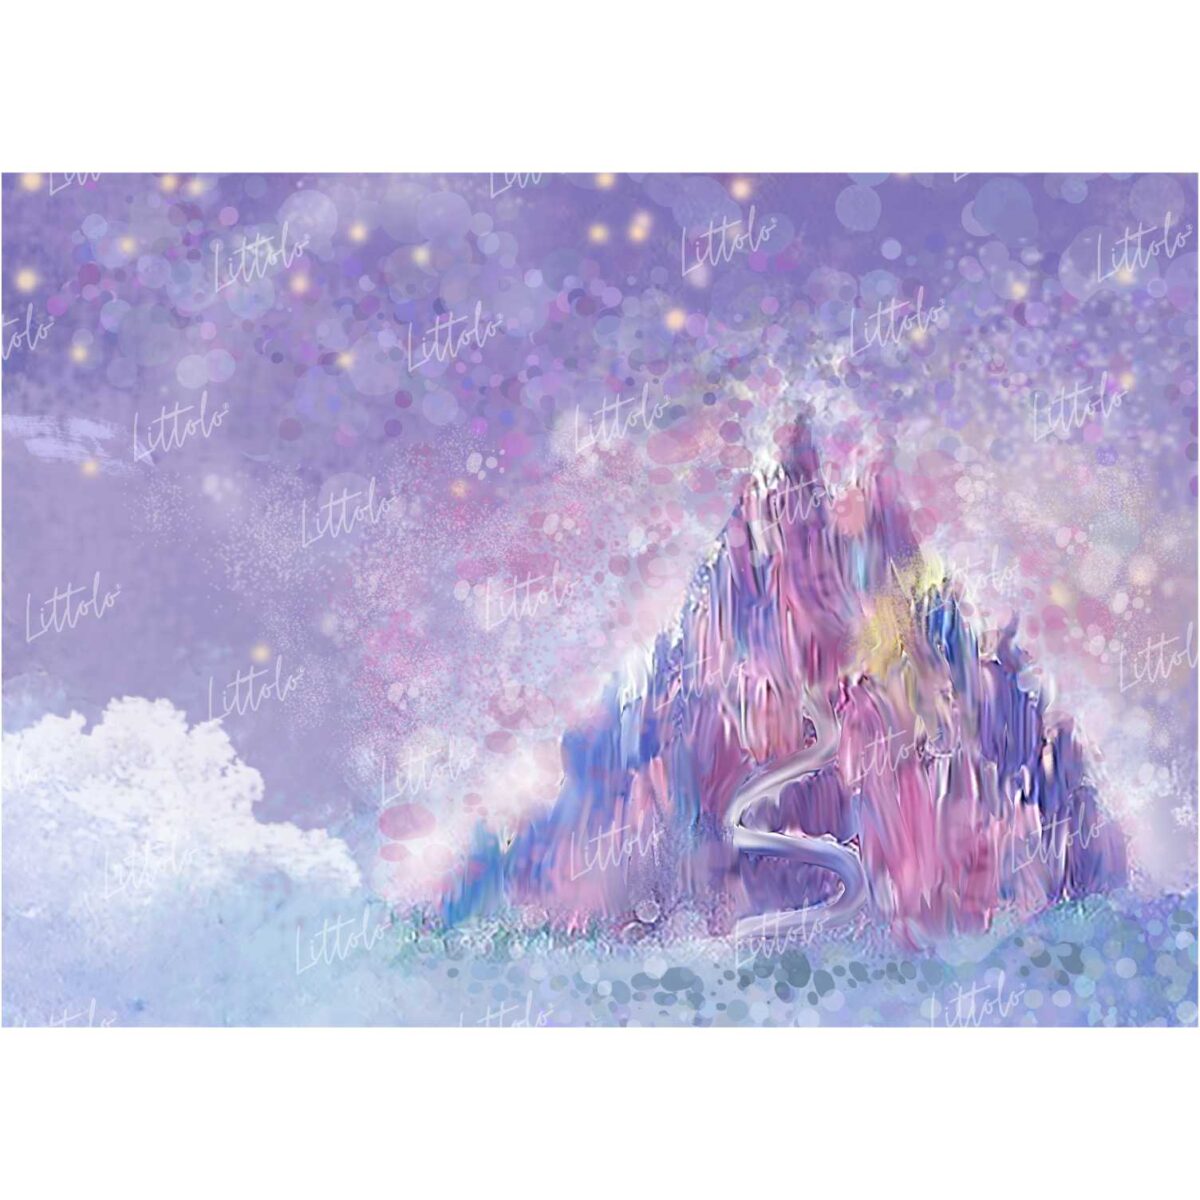 LB0106 Magical Land Castle Theme Backdrop